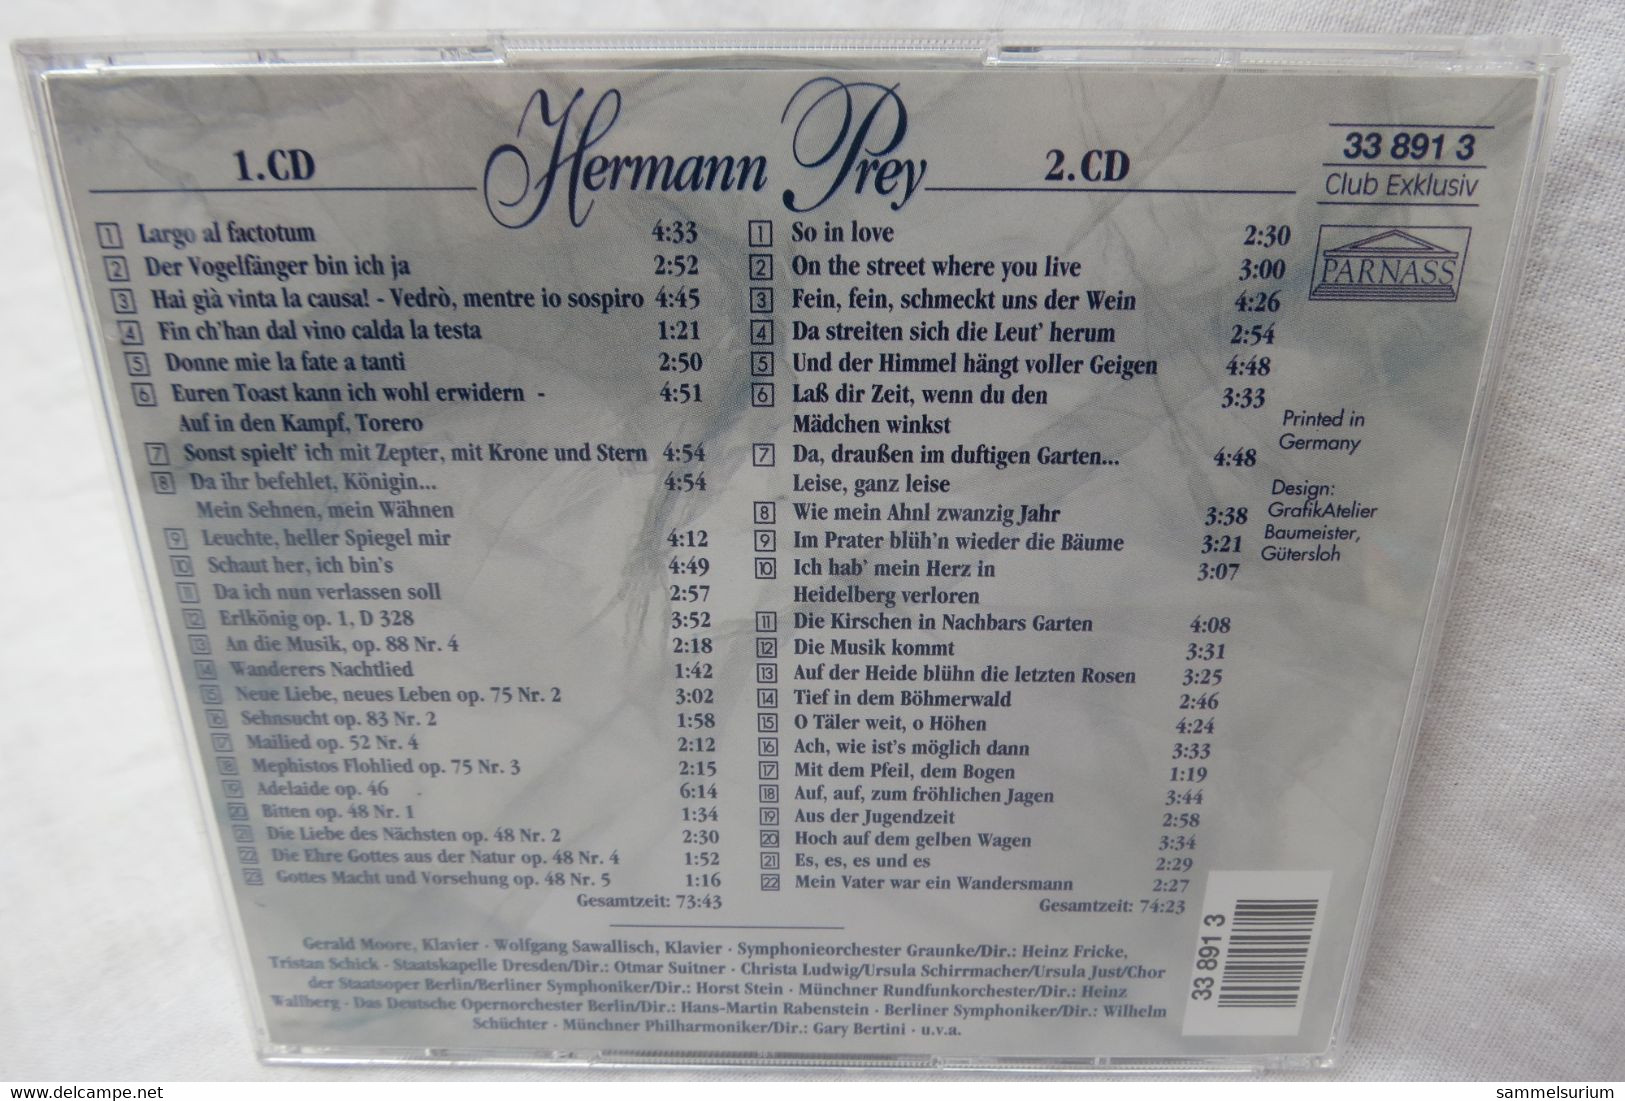 2 CDs "Hermann Prey" Ein Leben Für Die Musik, Von Der Oper Bis Zum Volkslied - Opere